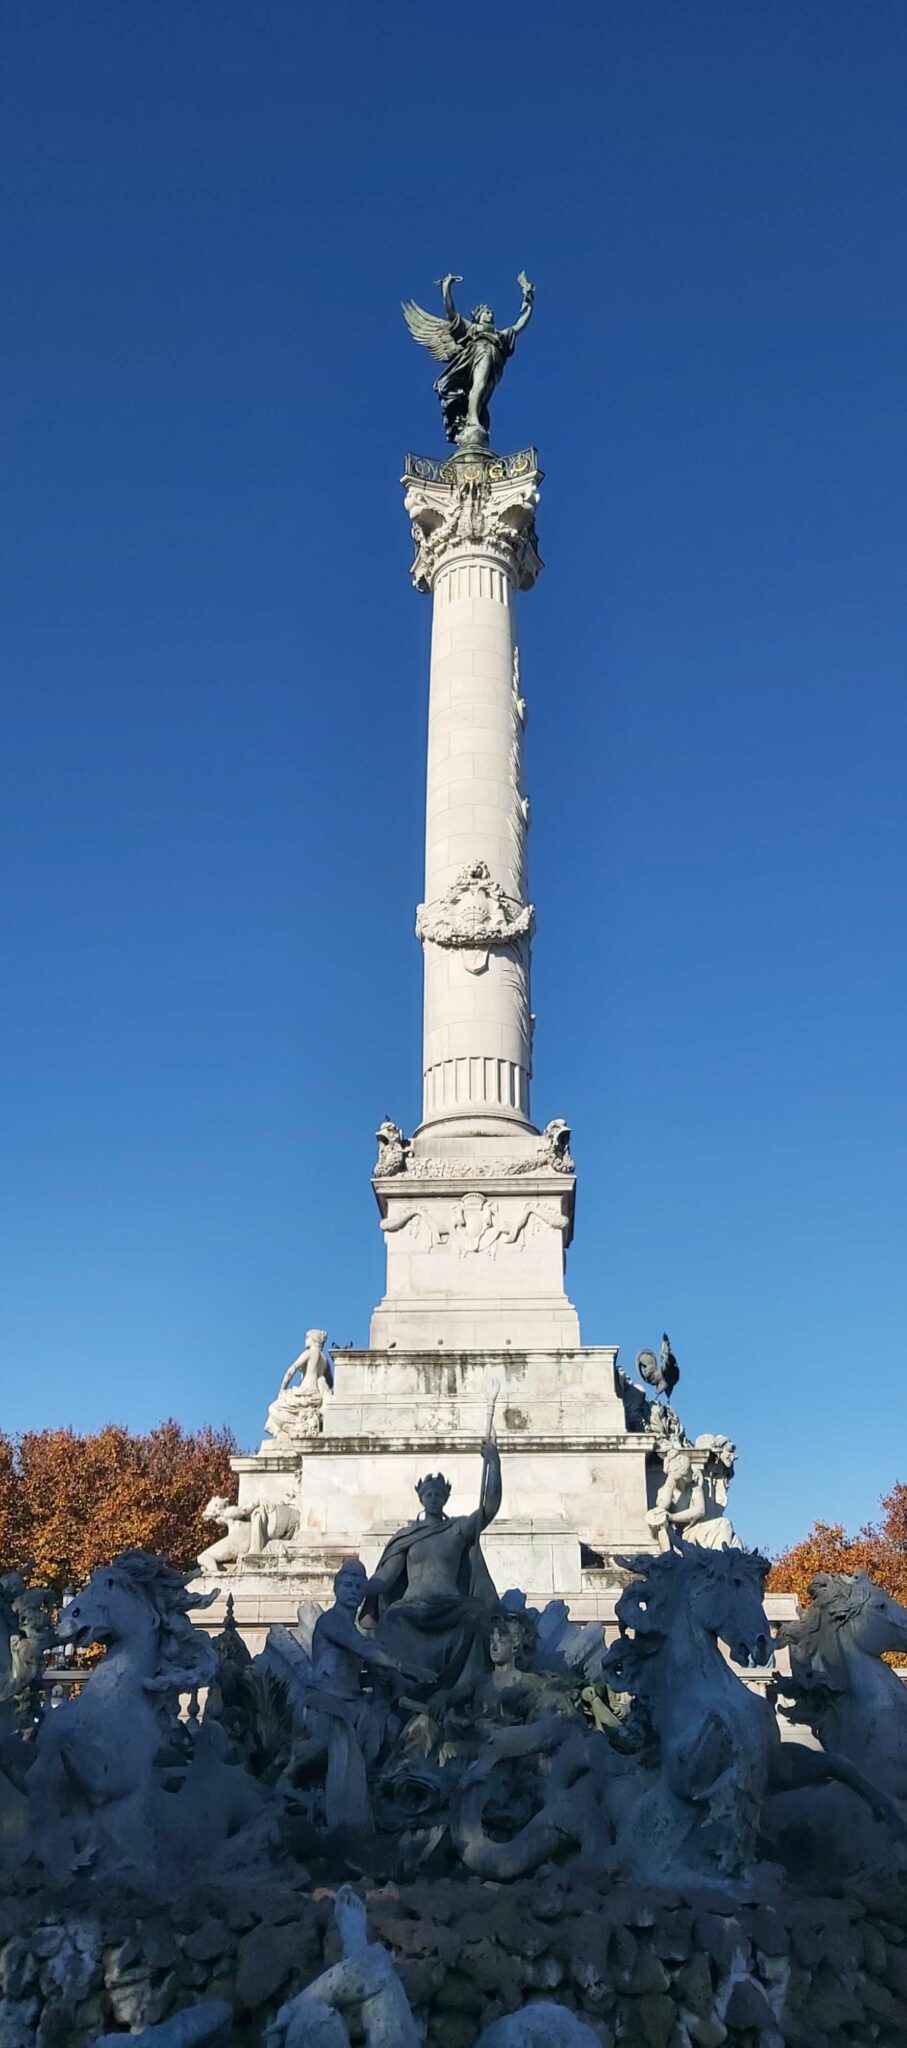 Le monument aux Girondins, qui surplombe la place des Quinconces à Bordeaux, rend hommage aux députés dits “girondins”. Un groupe politique puissant dans les premières années de la révolution française avant d’être, pour une large part, poursuivi et éliminé pendant la Terreur.